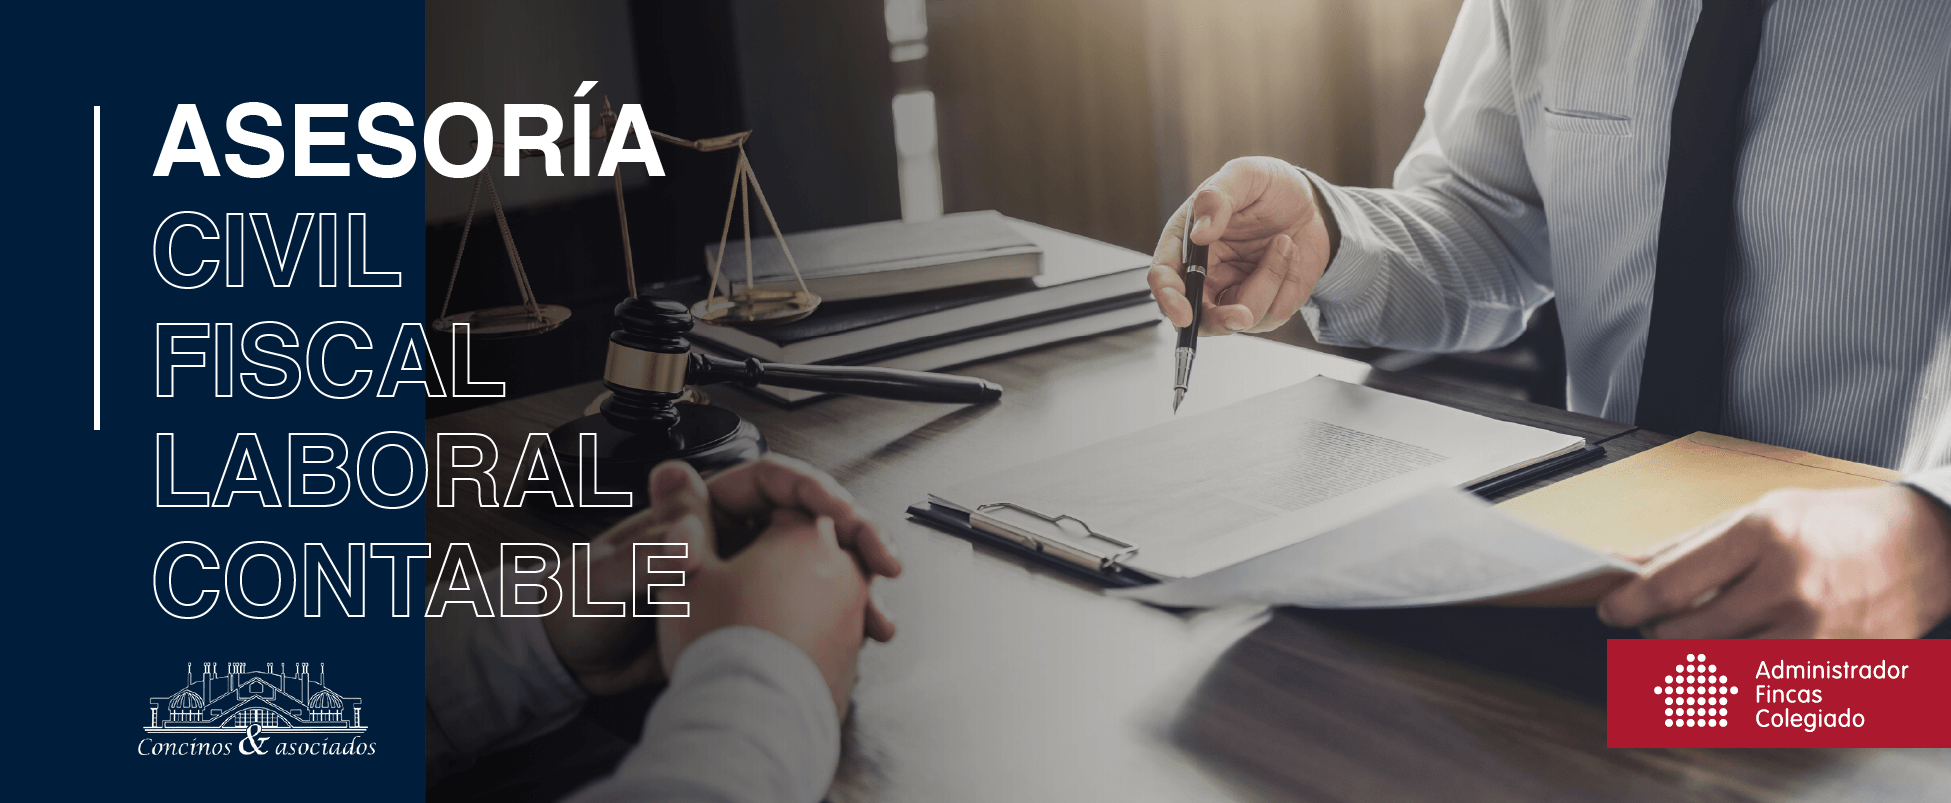 Asesoría civil, fiscal, laboral y contable en asturias